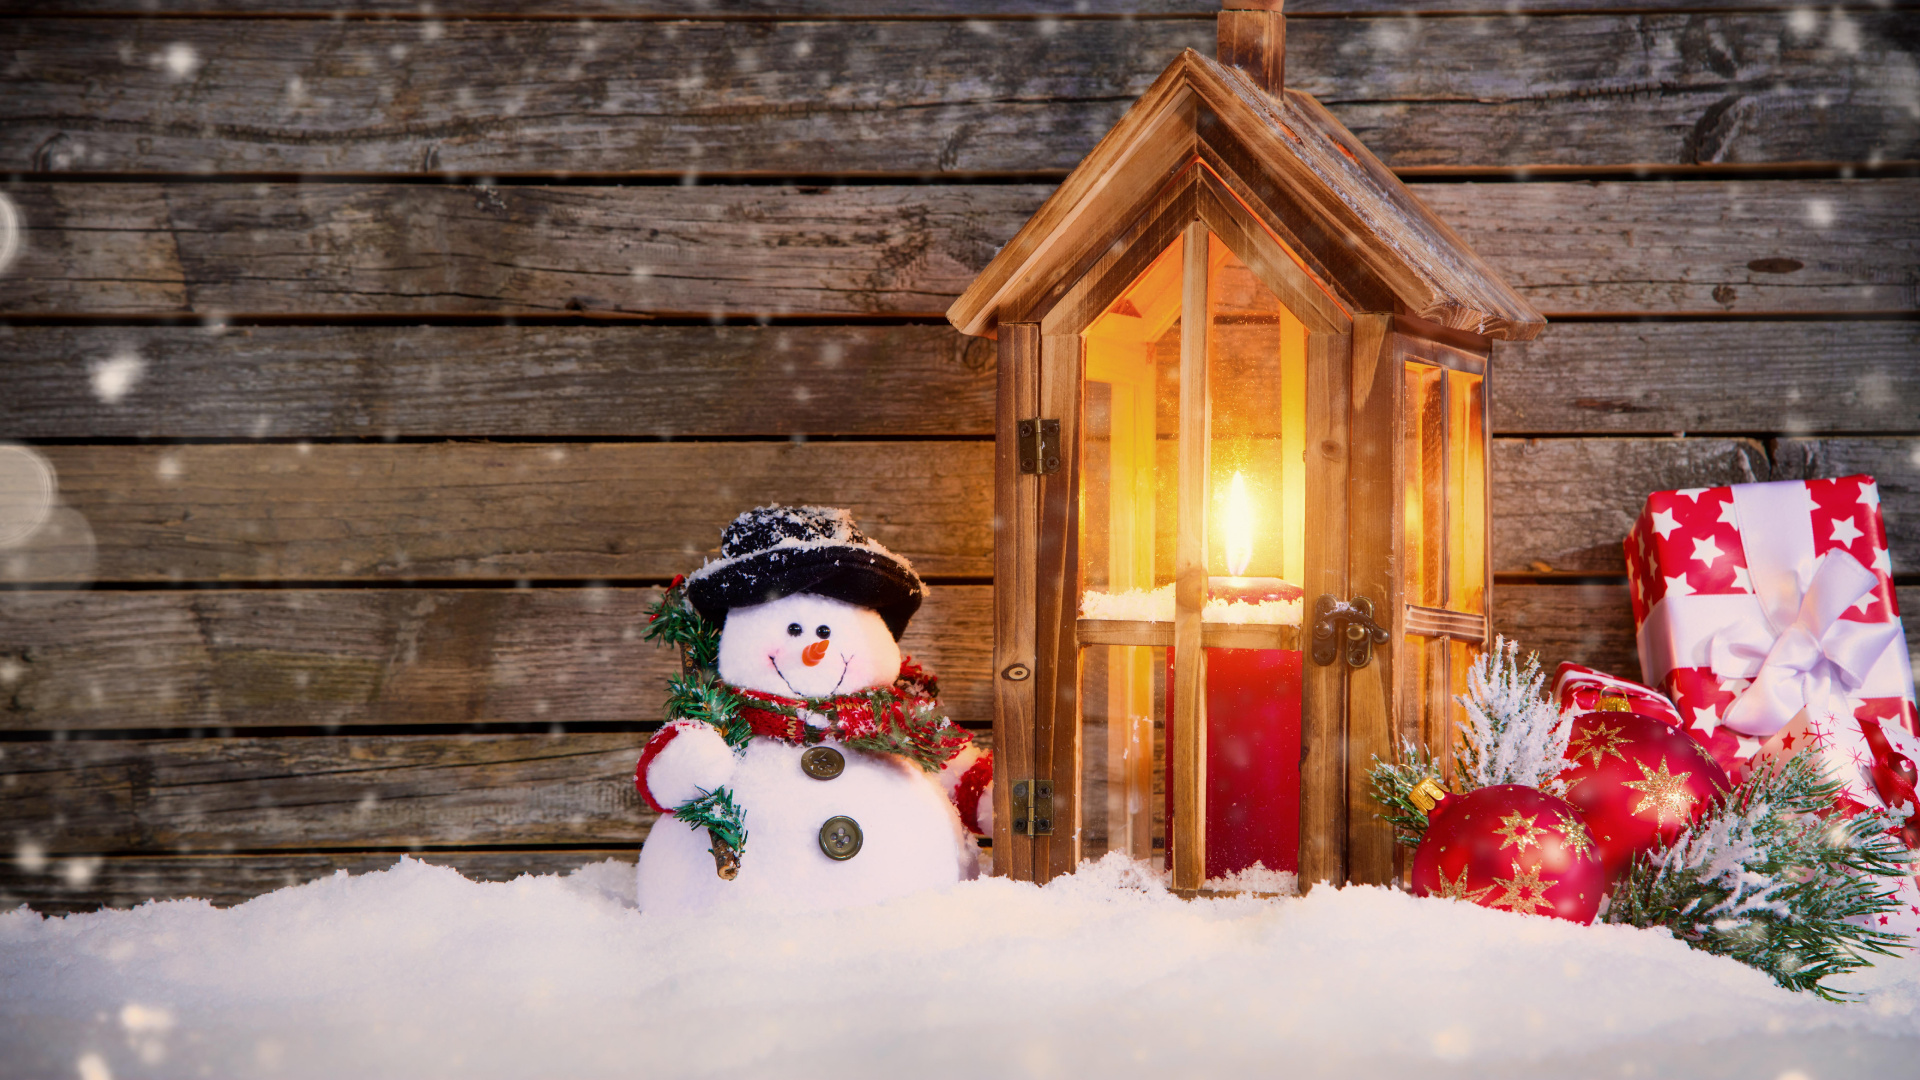 圣诞节那天, 雪人, 圣诞装饰, 圣诞节的装饰品, 冬天 壁纸 1920x1080 允许